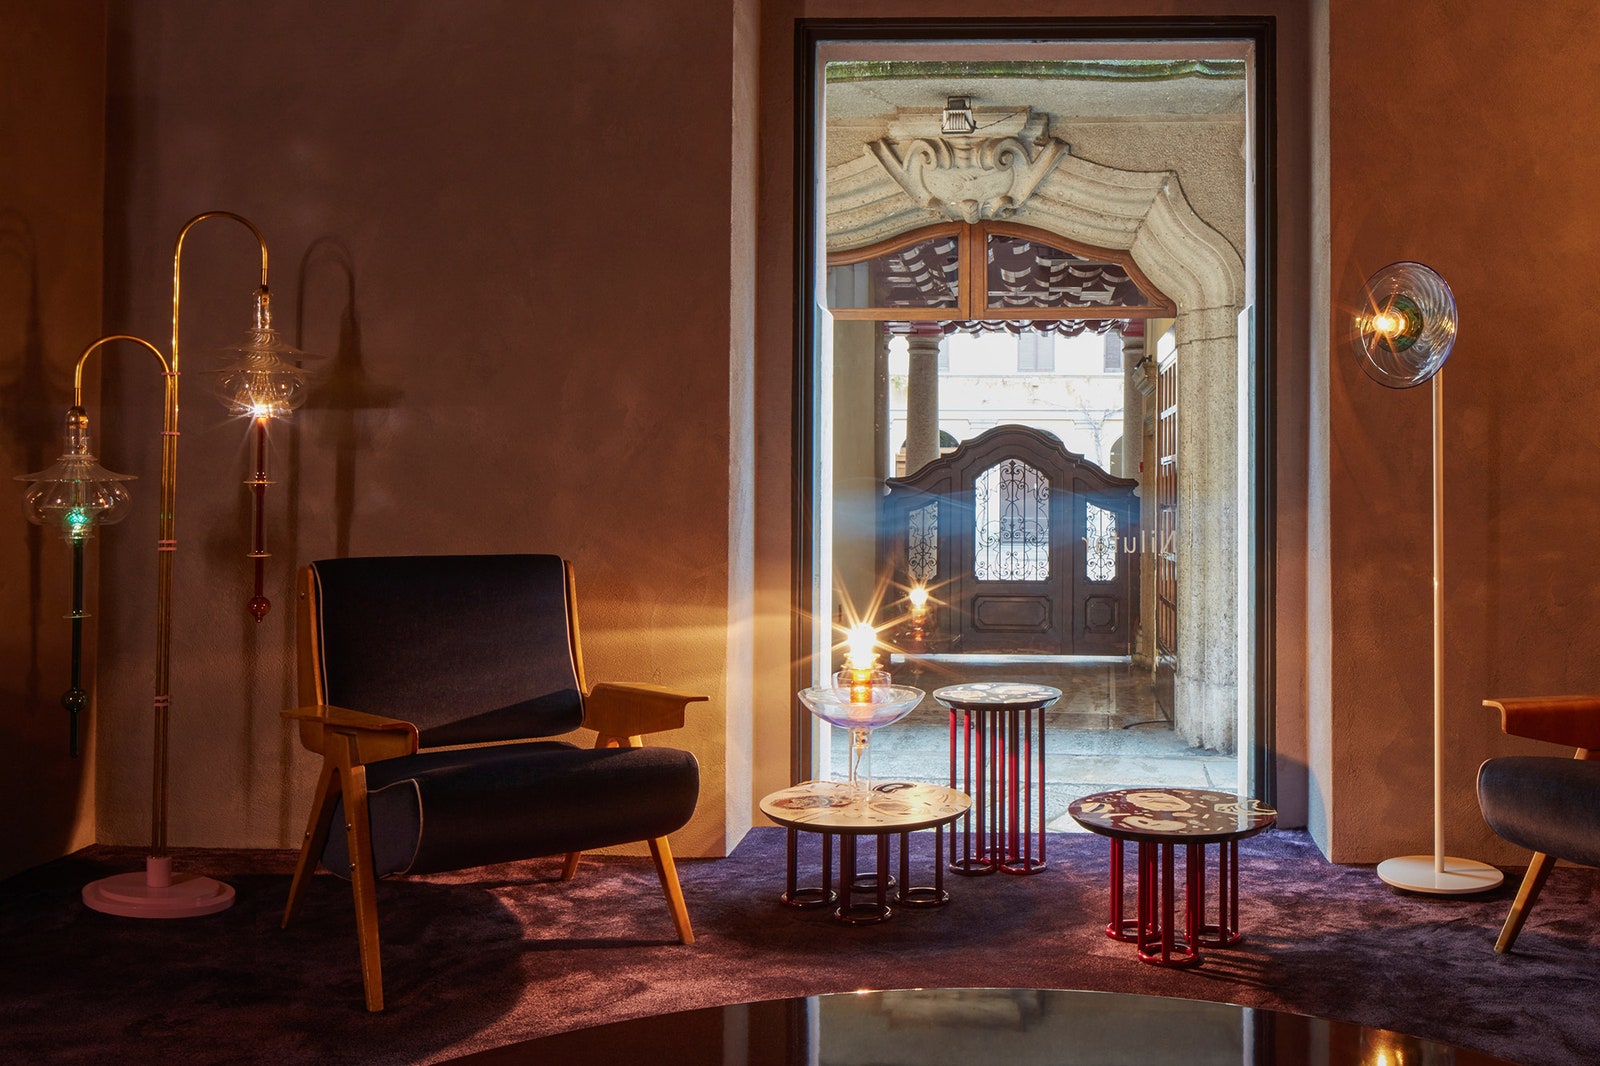 Индиа Мадави Майкл Анастасиадис и Бетан Лаура Вуд проекты галереи Nilufar на Миланской неделе дизайна 2019